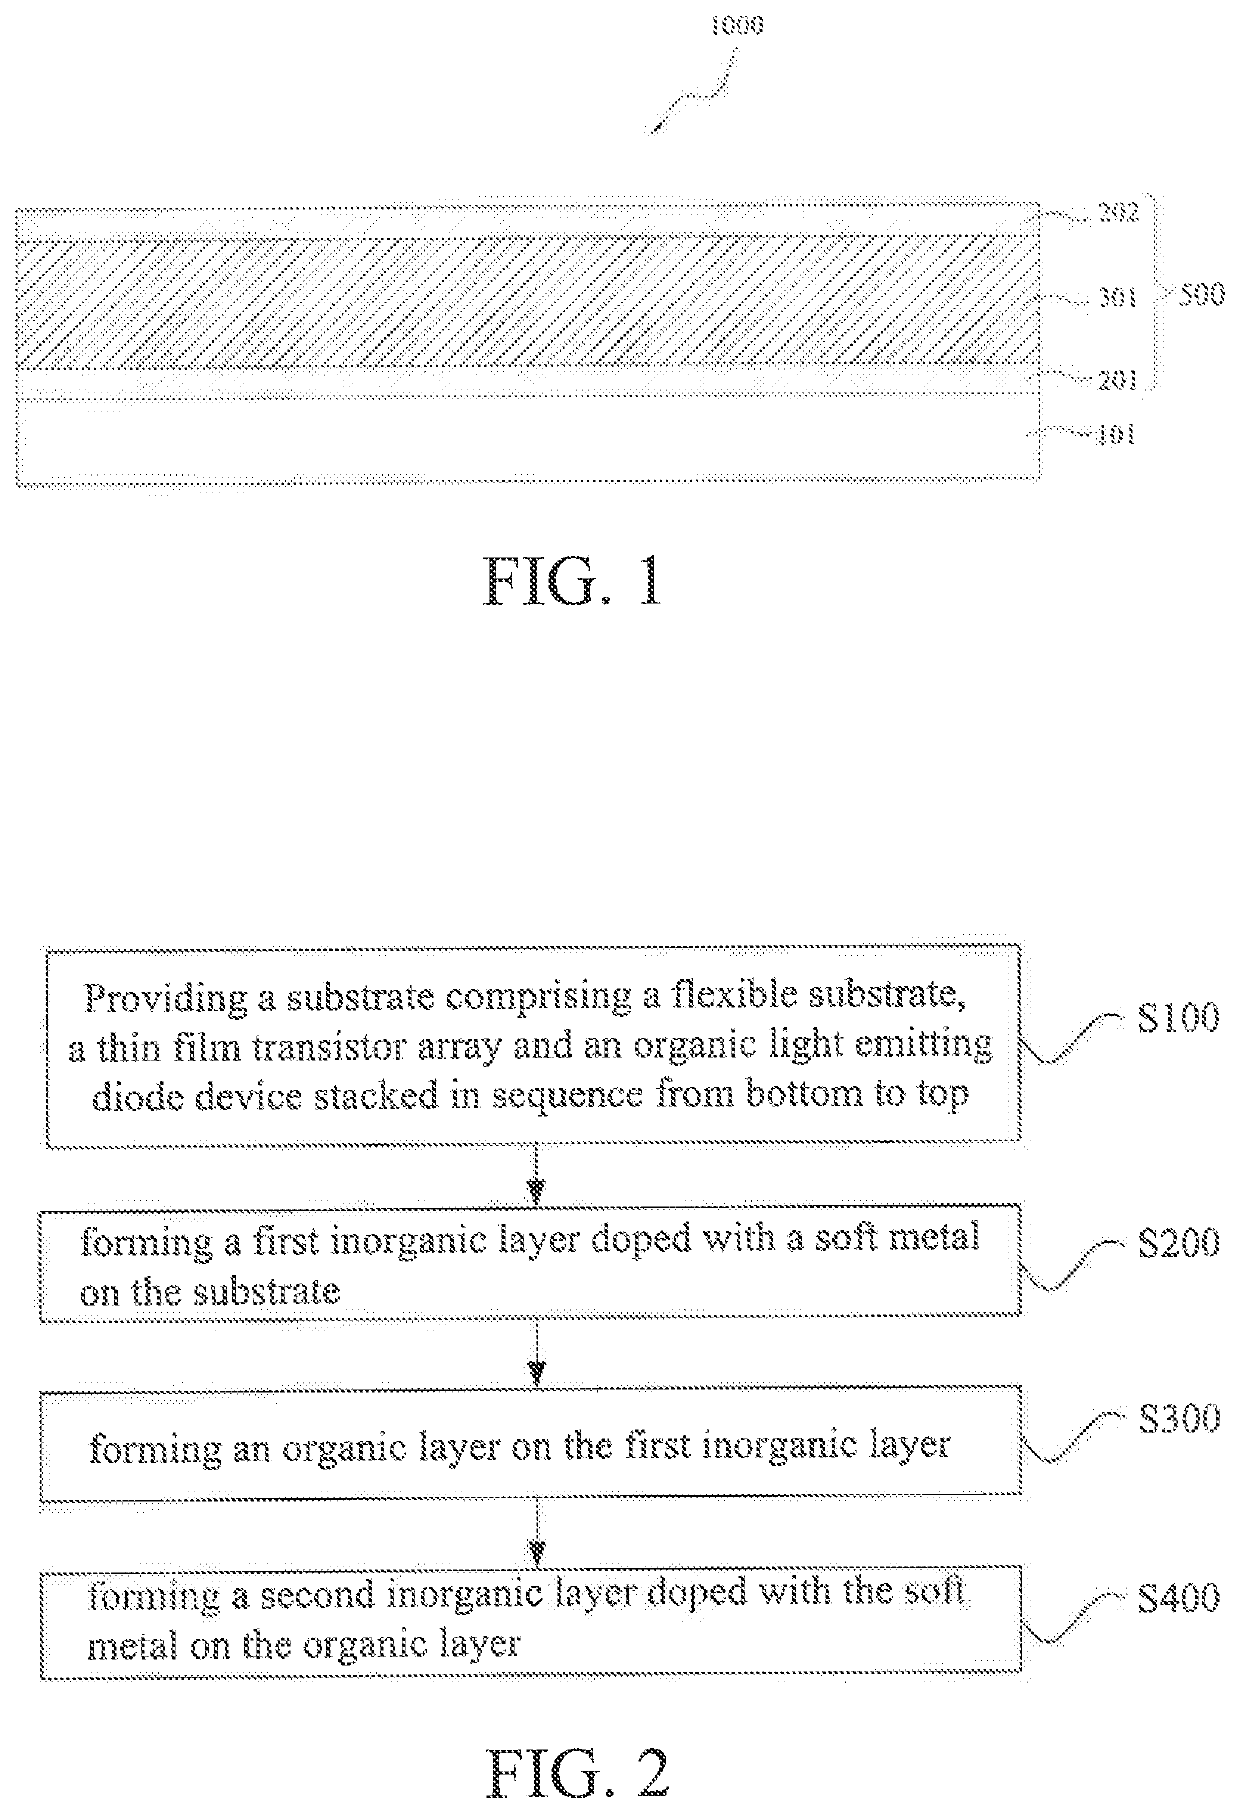 Flexible organic light emitting diode display panel and method for fabricating same